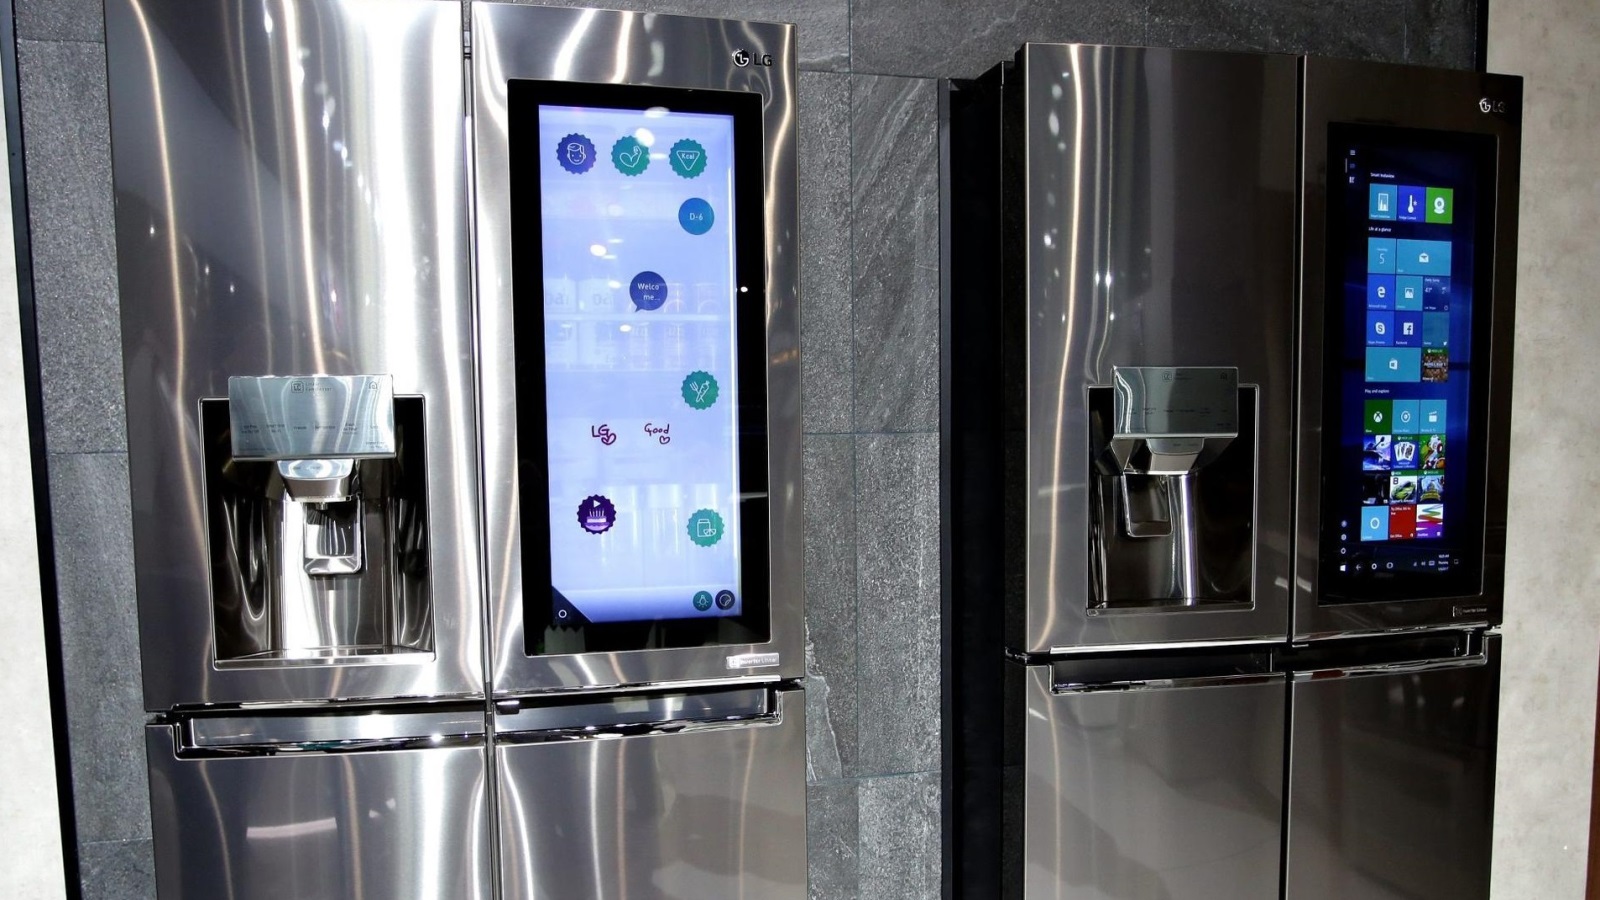 ‪أل جي تفاخرت بثلاجاتها الذكية، وإلى اليمين تظهر على الثلاجة شاشة ويندوز 10 عملاقة‬ (الأوروبية)